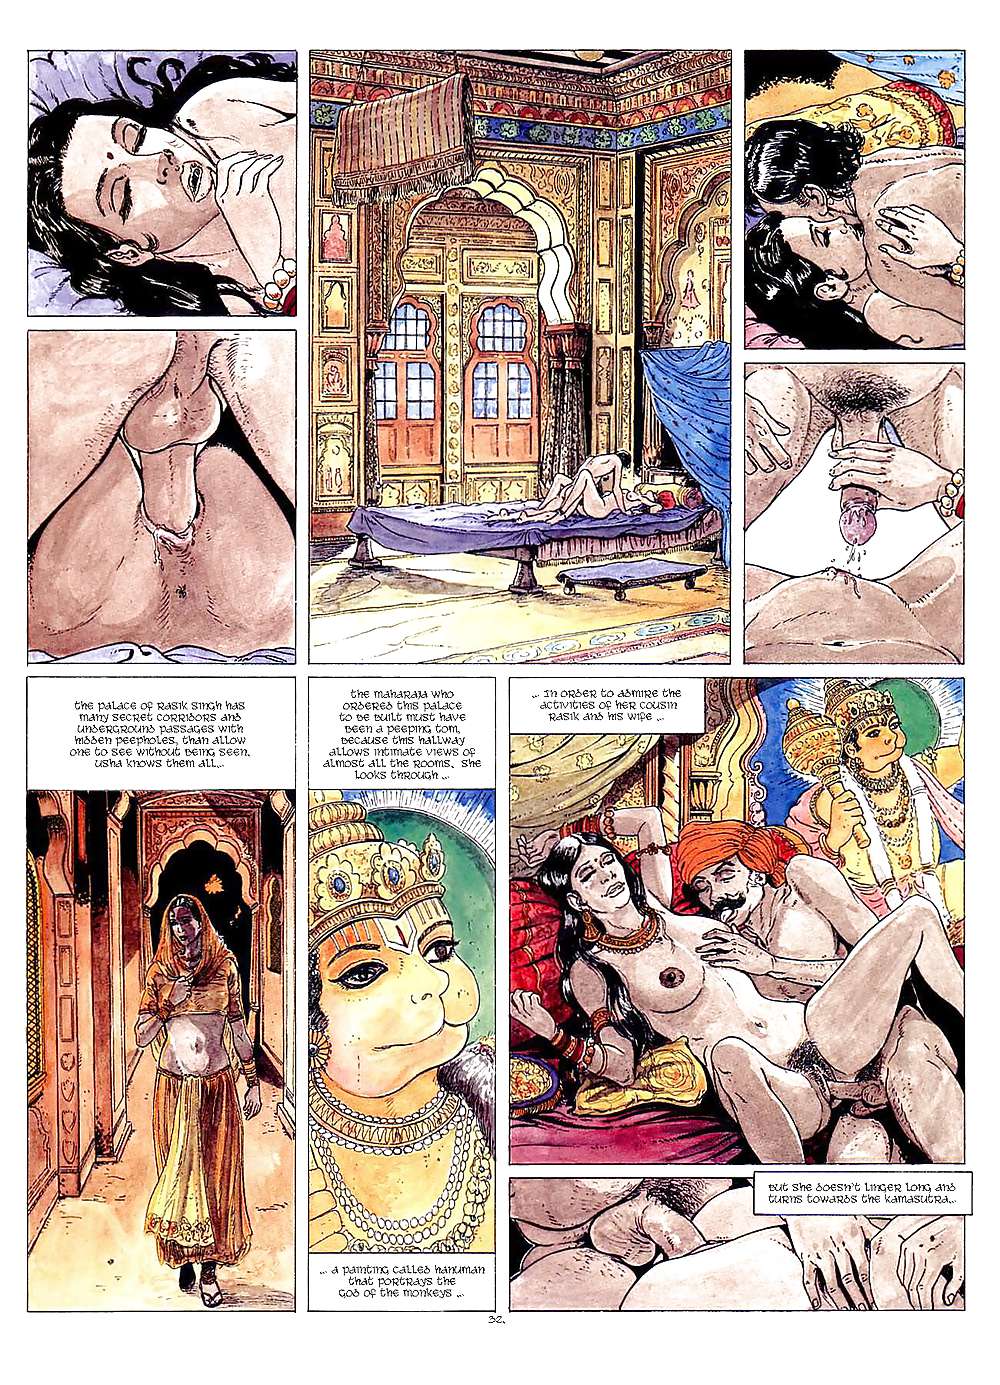 Erotic Comic Art 40 - Kama-Sutra #19691220